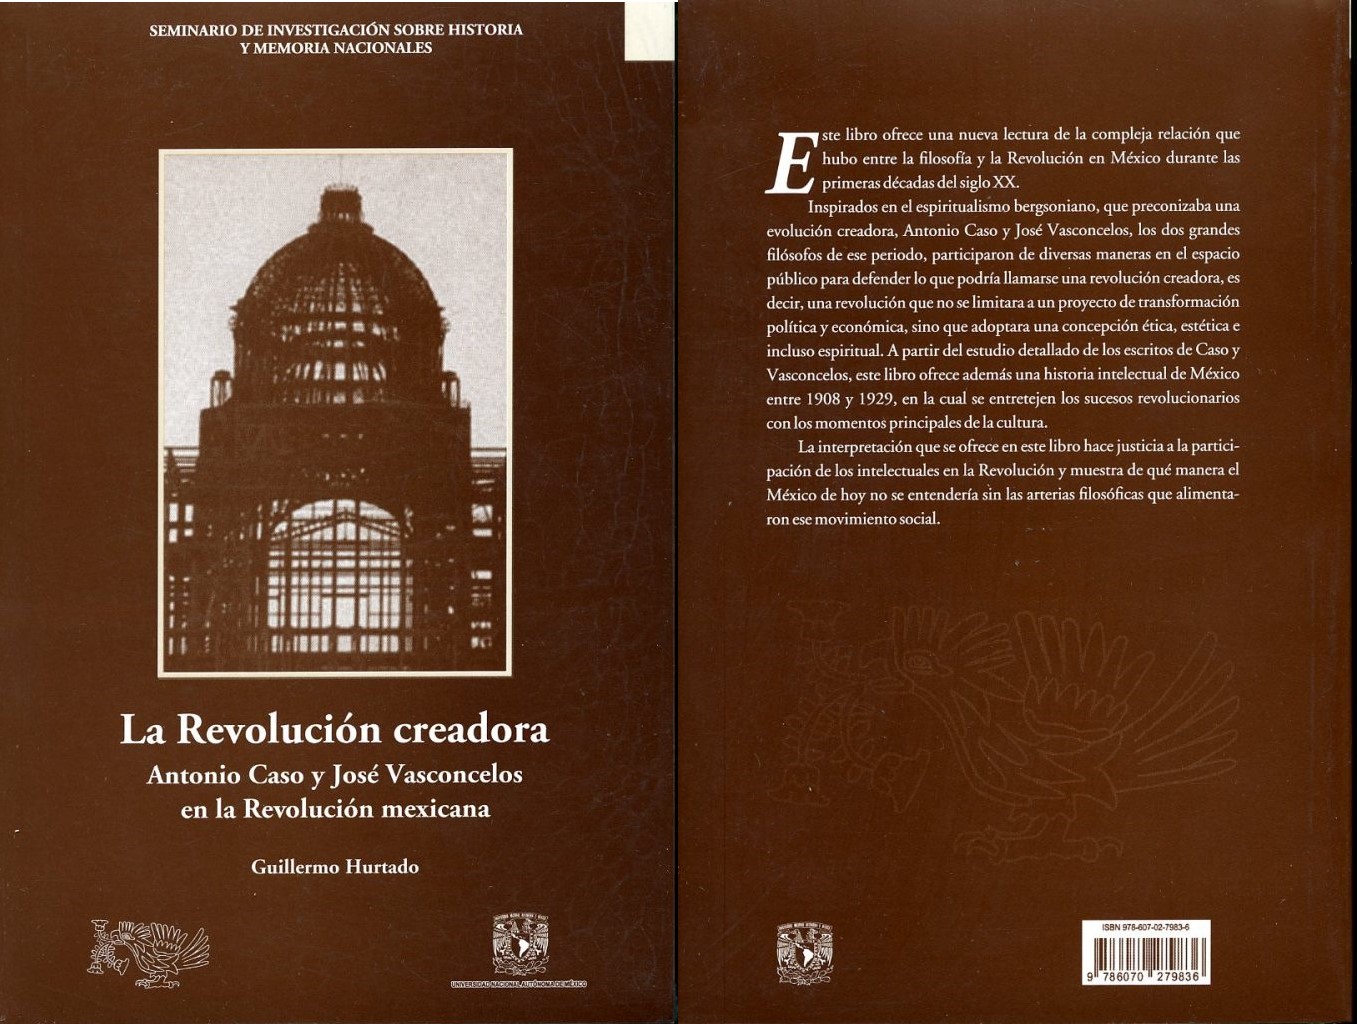 La Revolución creadora: Antonio Caso y José Vasconcelos en la Revolución mexicana